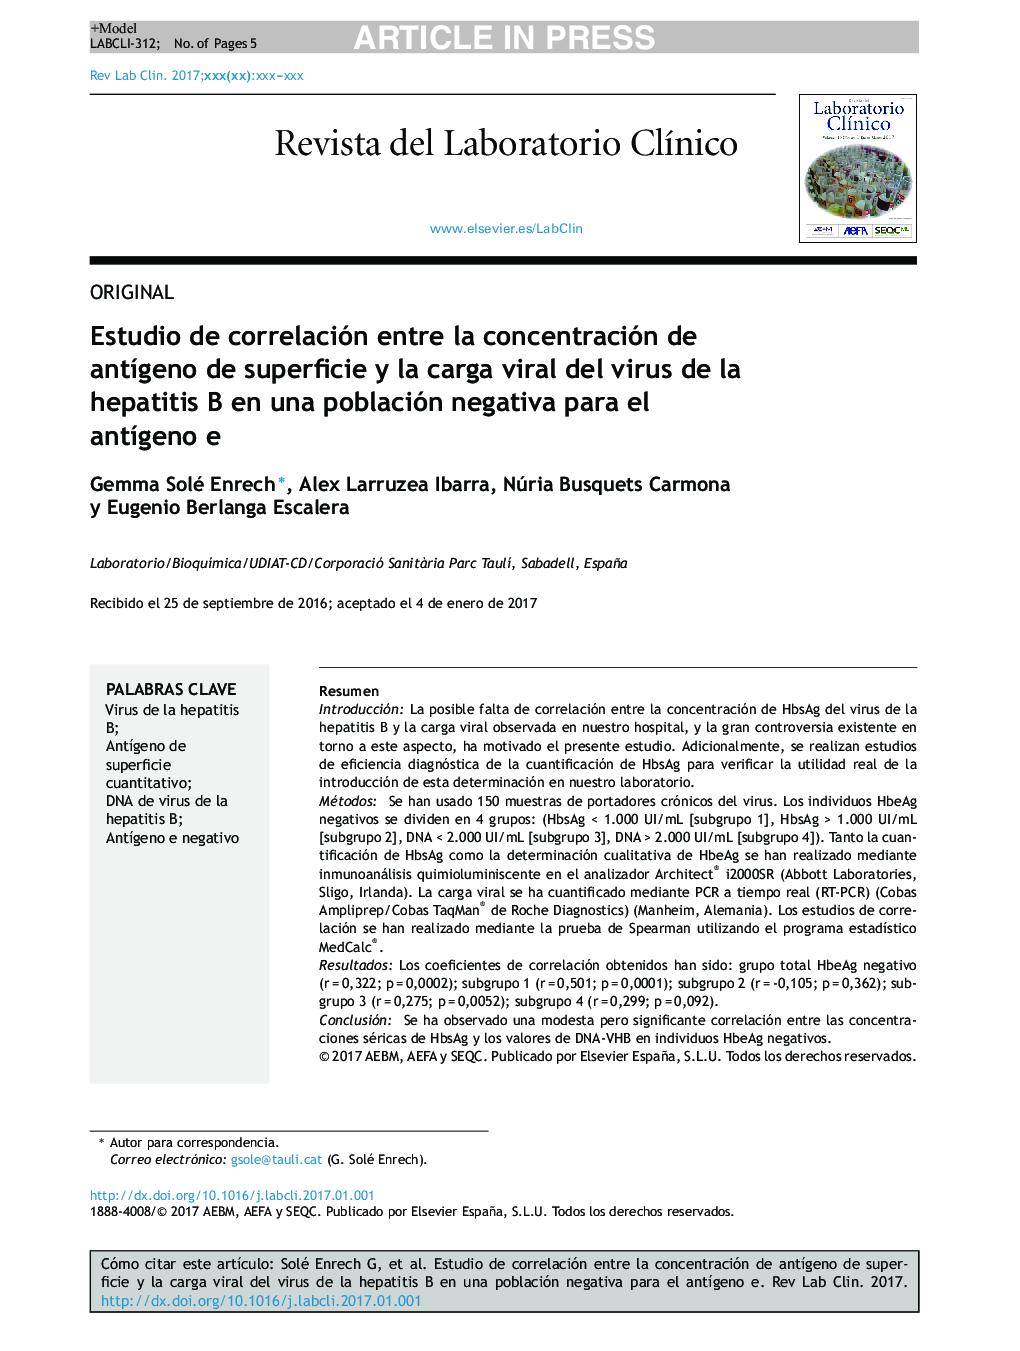 Estudio de correlación entre la concentración de antÃ­geno de superficie y la carga viral del virus de la hepatitis B en una población negativa para el antÃ­geno e